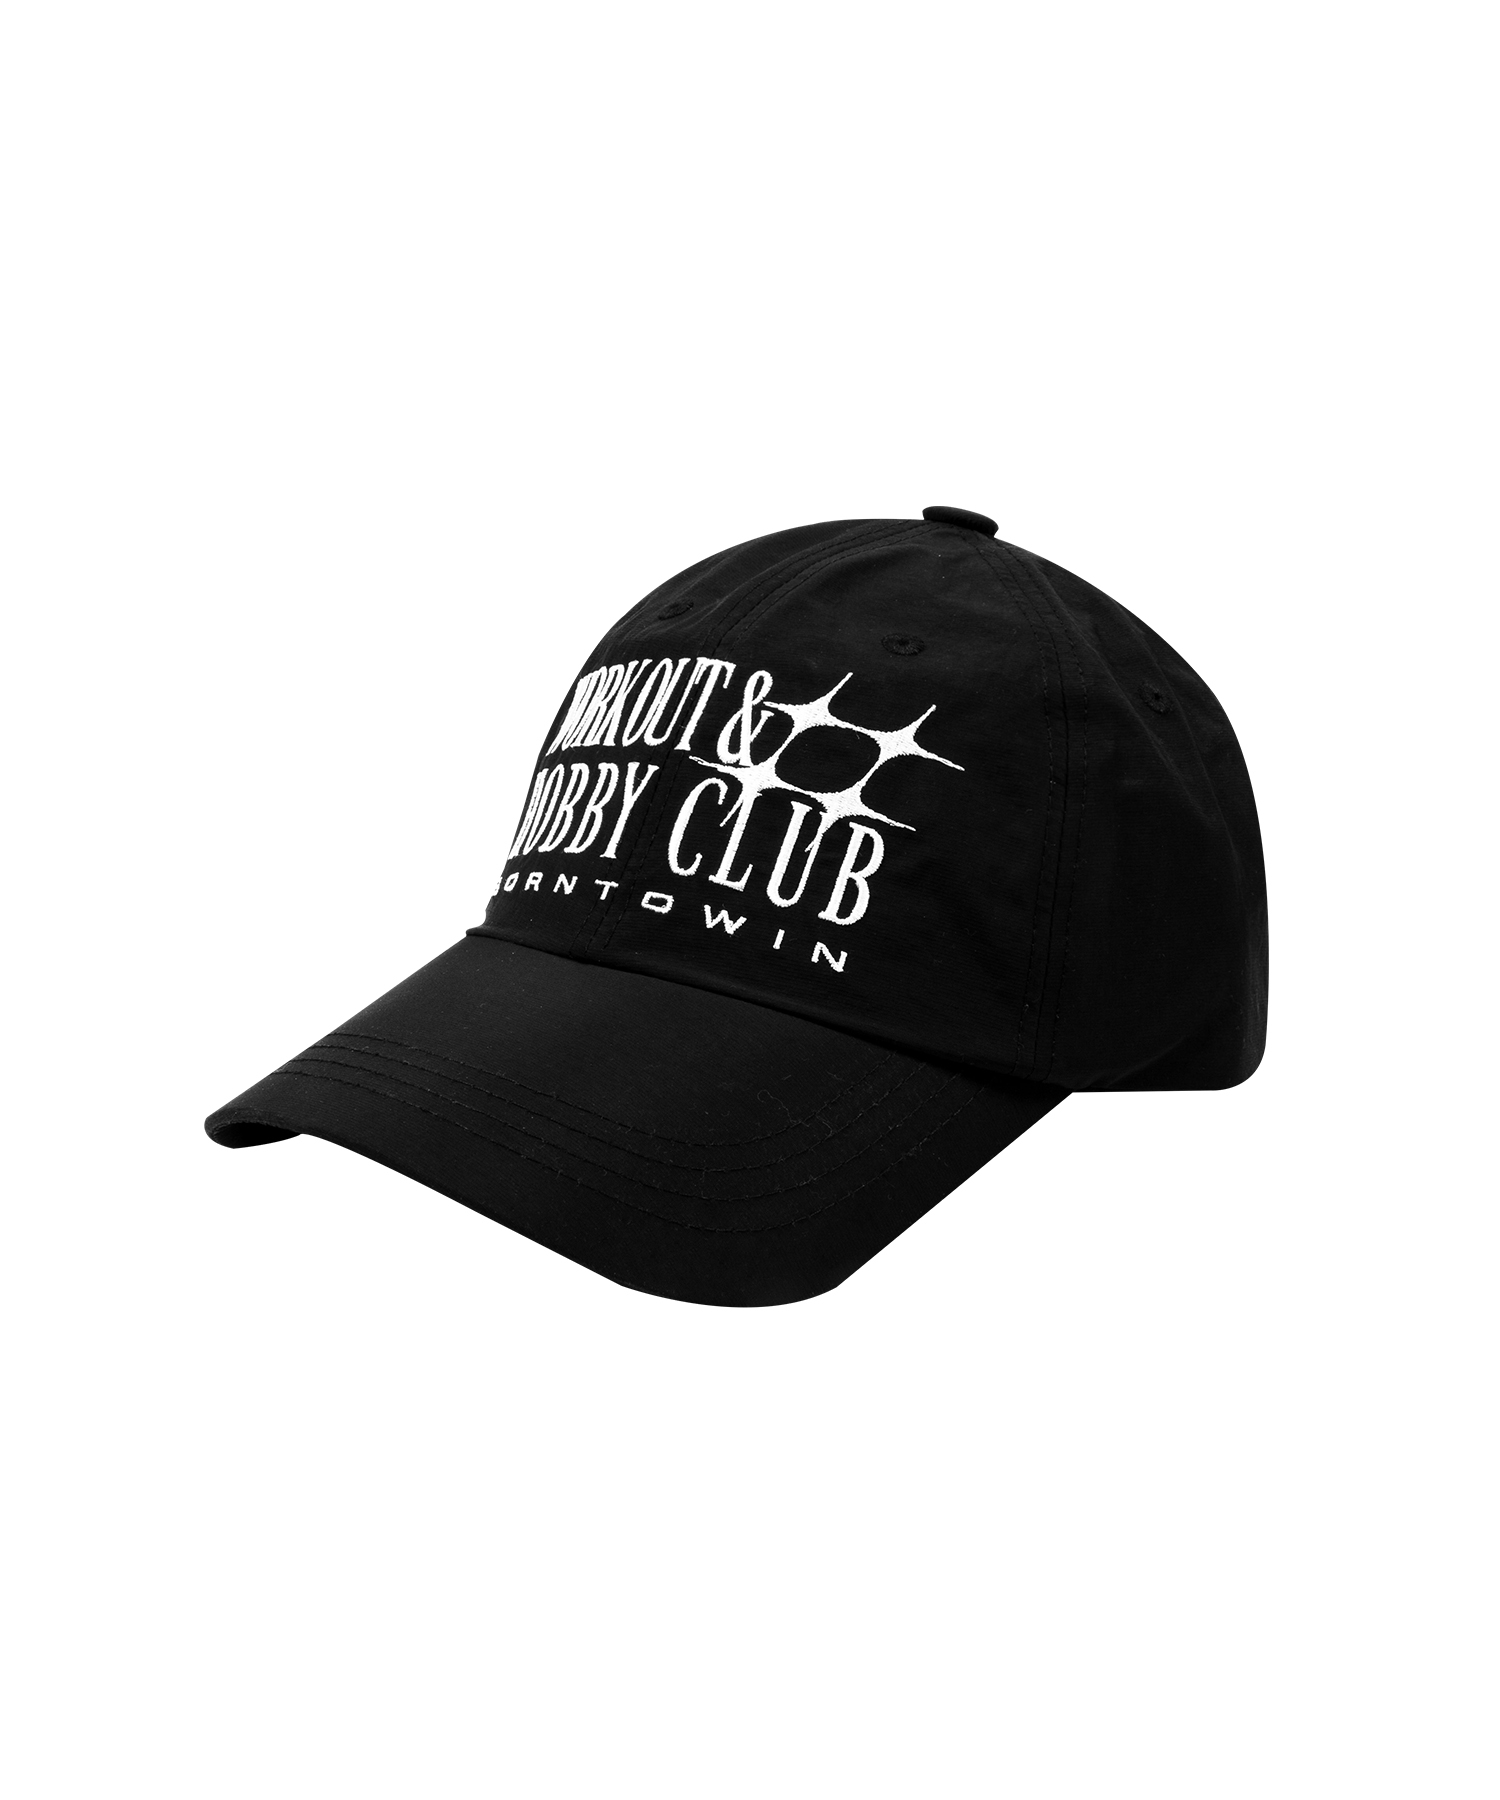 STAR CLUB BALL CAP [BLACK]